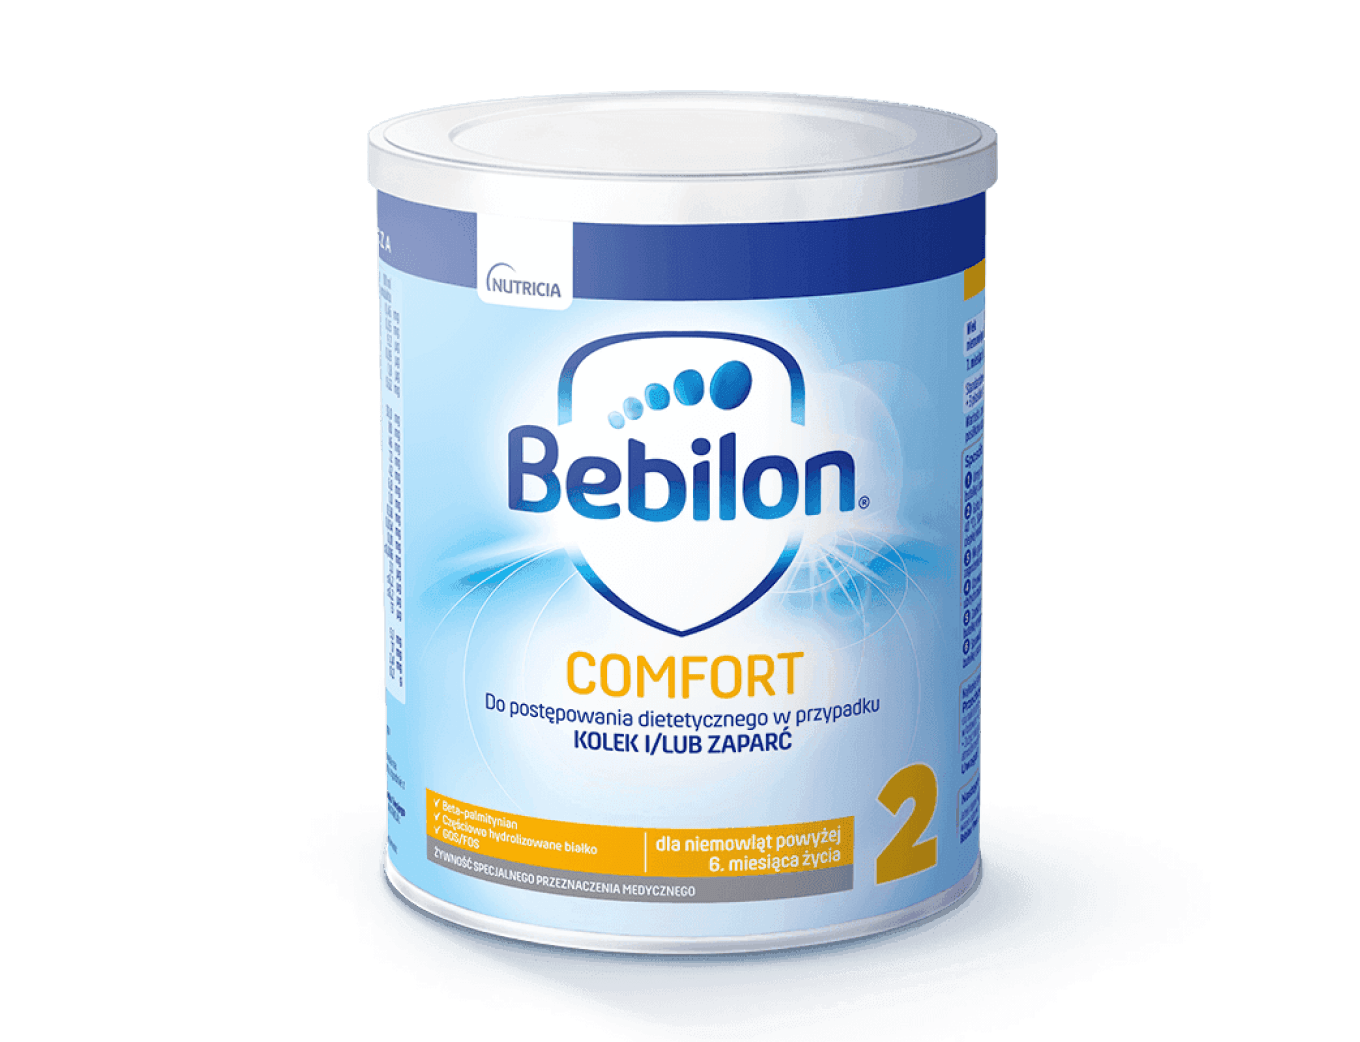 Bebilon_Comfort_2_400g_bFtCjWn.png